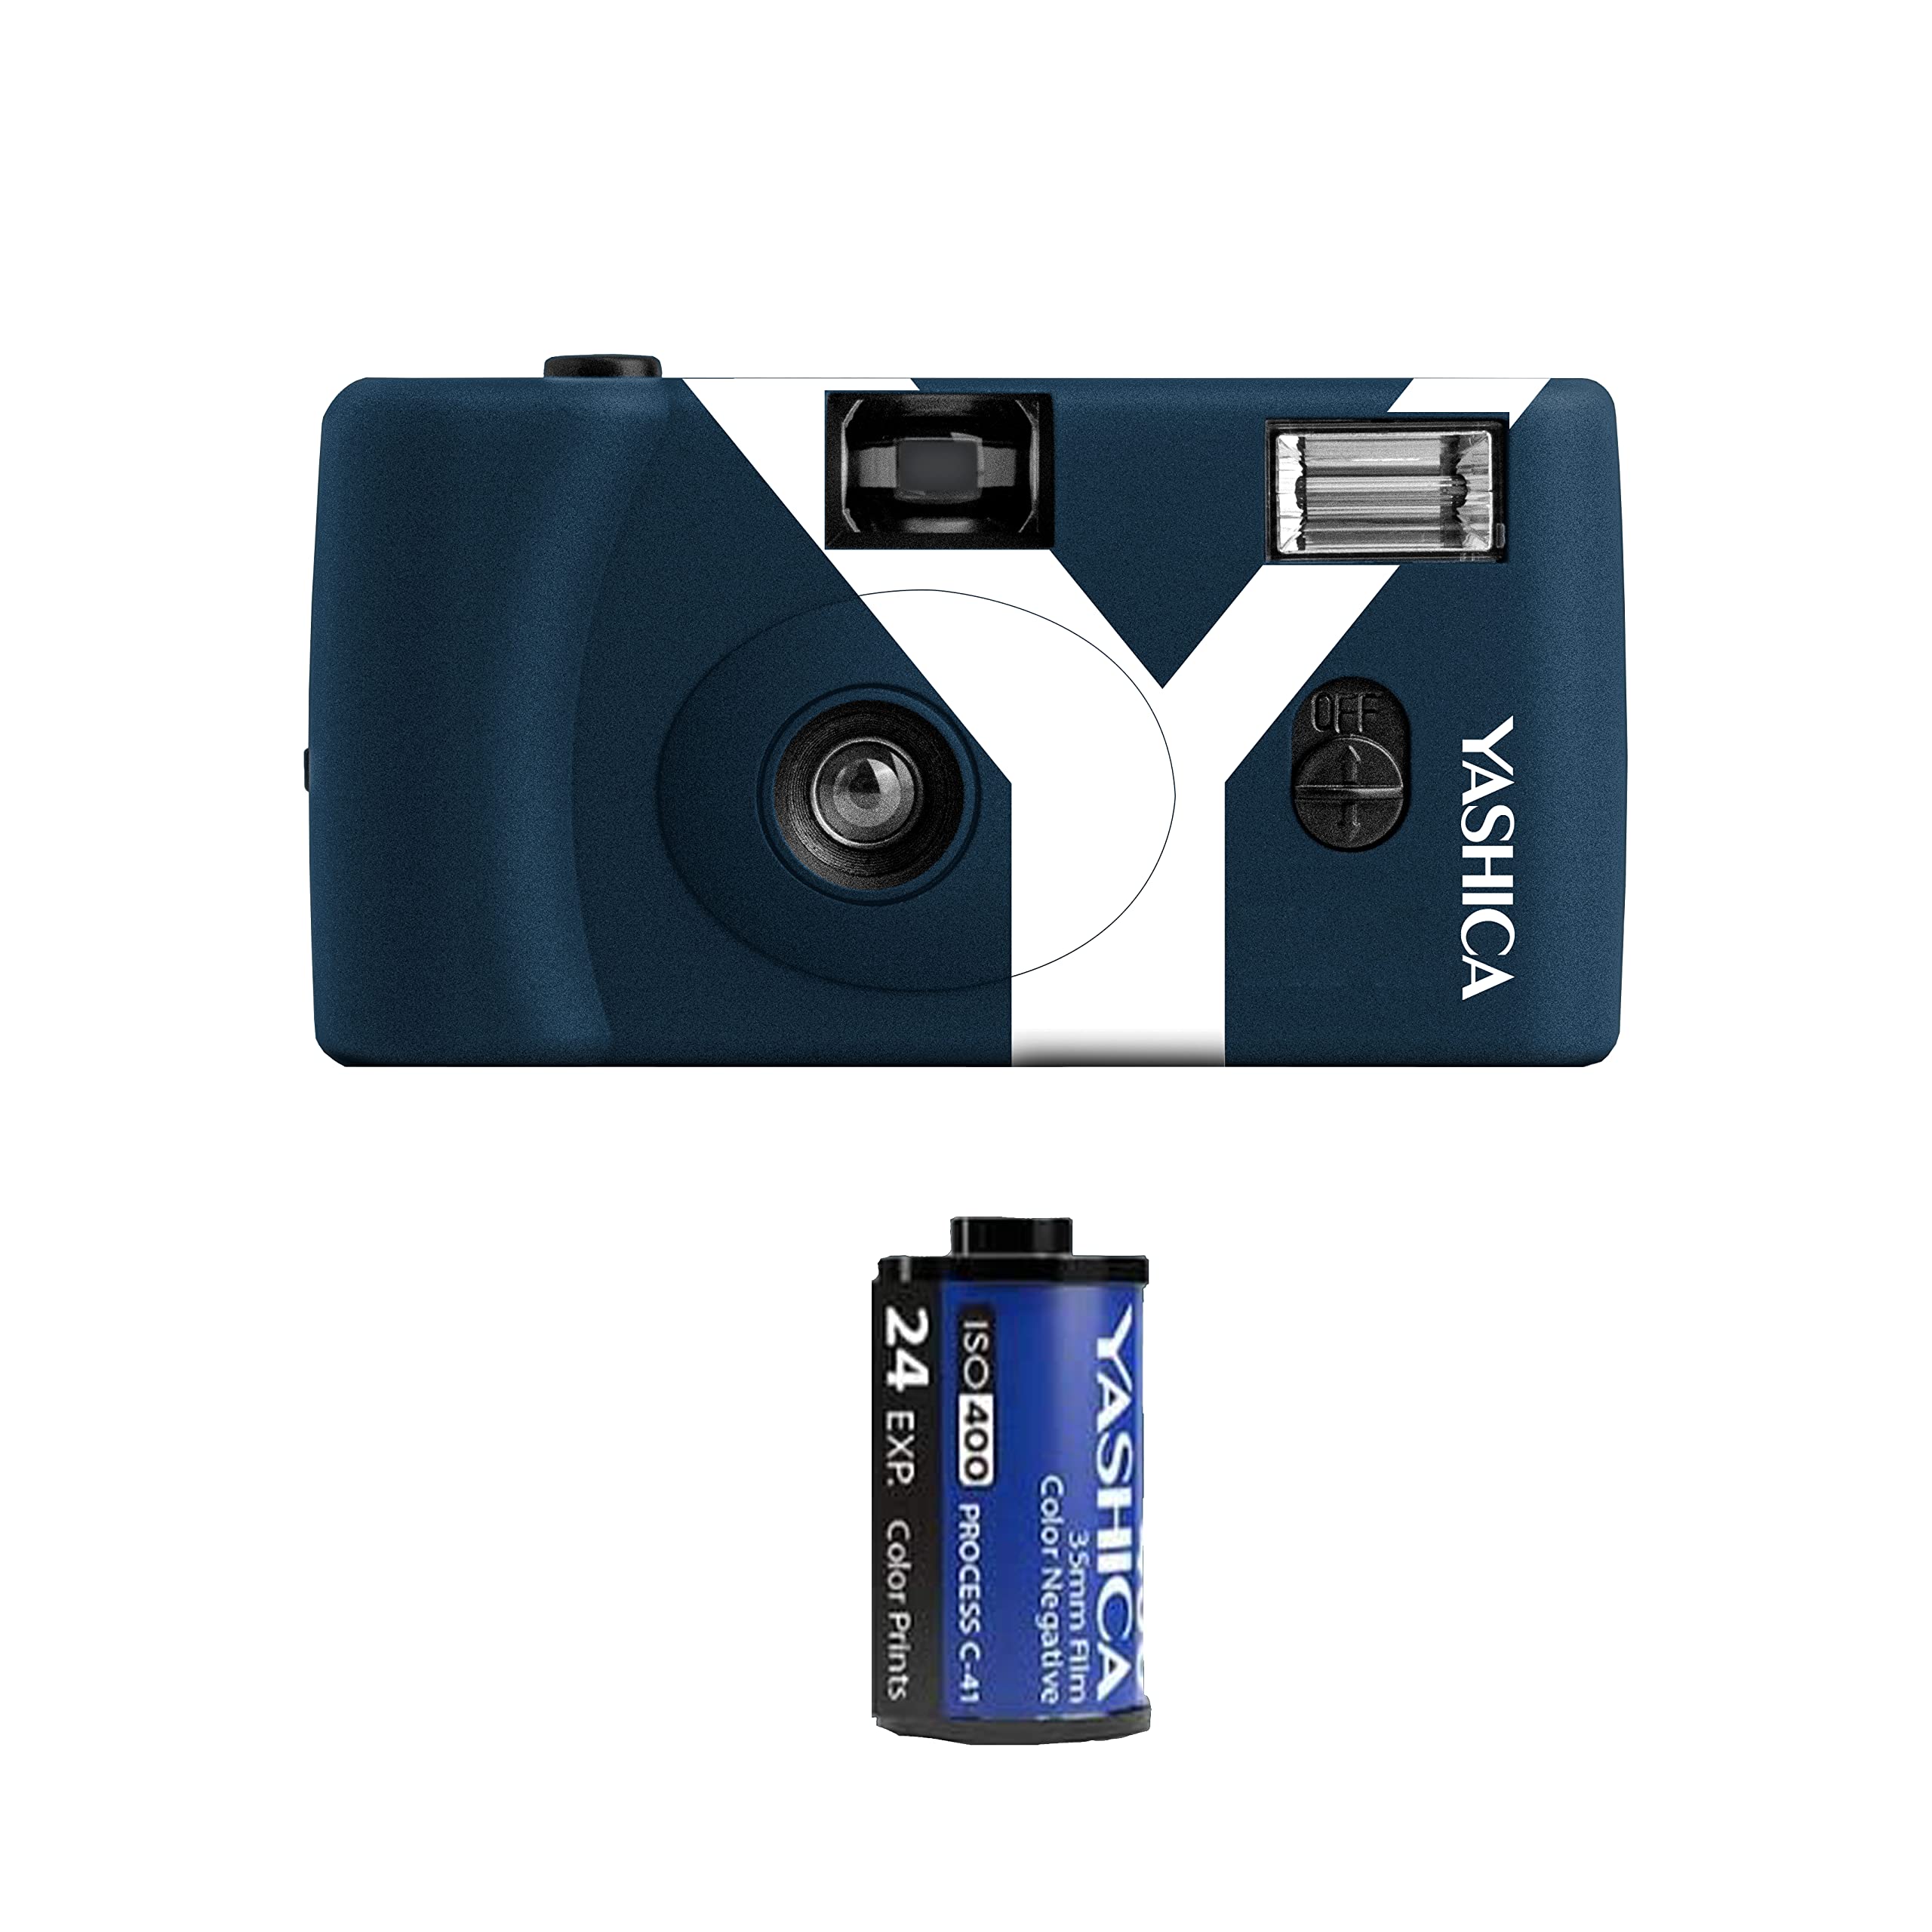 Yashica MF1 dunkel blau Kleinbild Kamera Set (Kamera+eingeletem Film+Batterie+Tragegurt) eine NACHHALTIGE nachladbare Einwegkamera